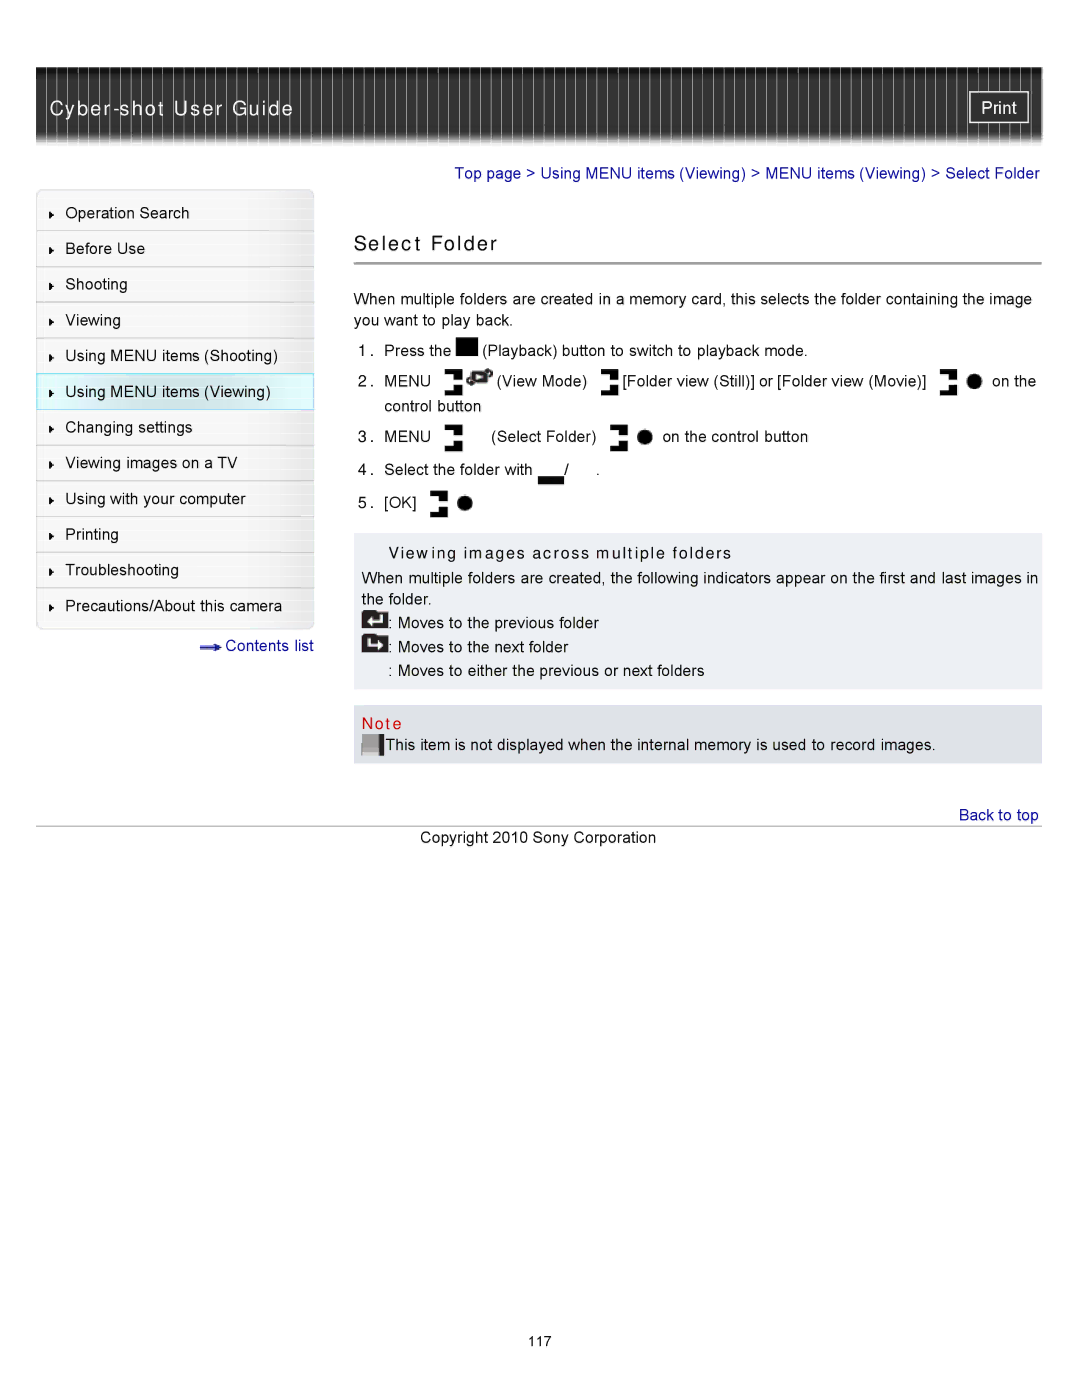 Sony DSC-W580, DSC-W570D manual Select Folder, Viewing images across multiple folders 